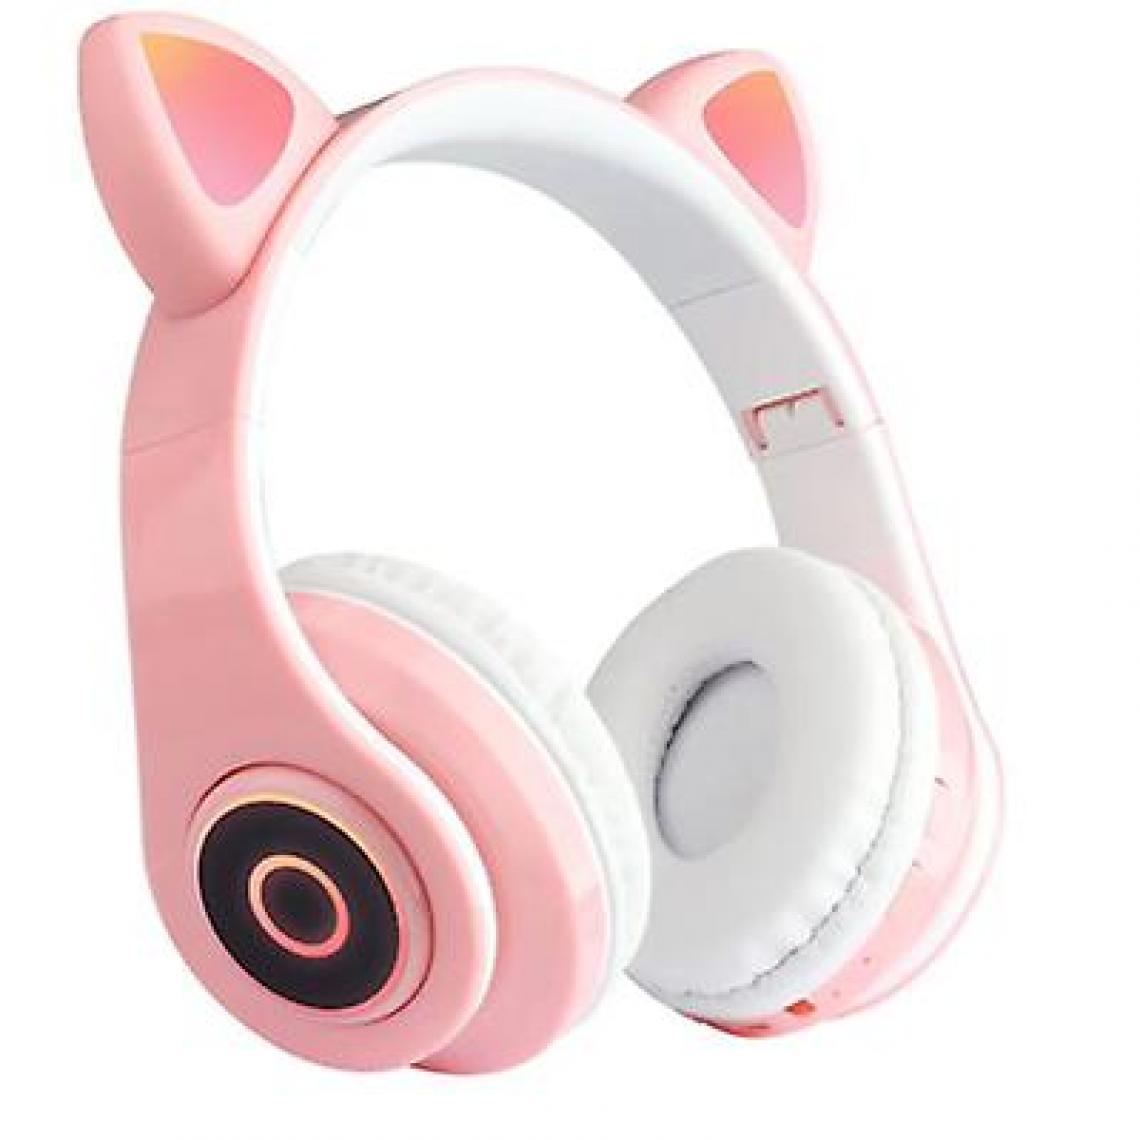 Universal - Casque pour chat sans fil casque Bluetooth casque LED casque pour enfants filles (rose) - Ecouteurs intra-auriculaires